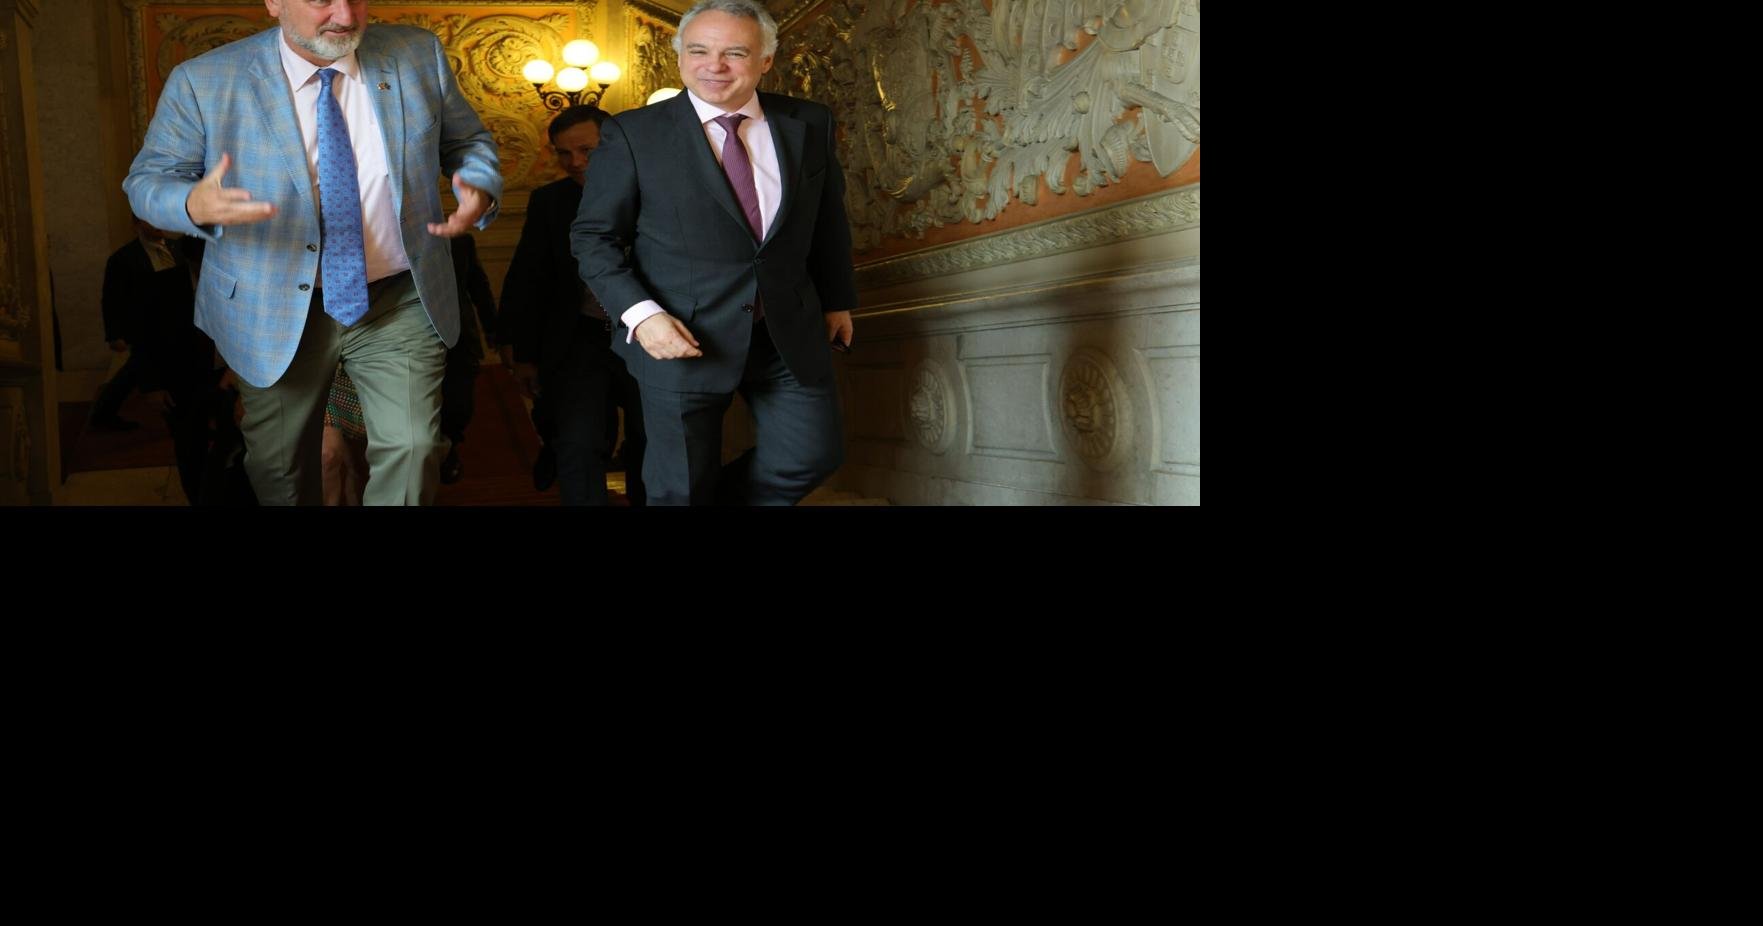 Le gouverneur de l’Indiana, Eric Holcomb, visite le Portugal pour un voyage de développement économique |  Politique